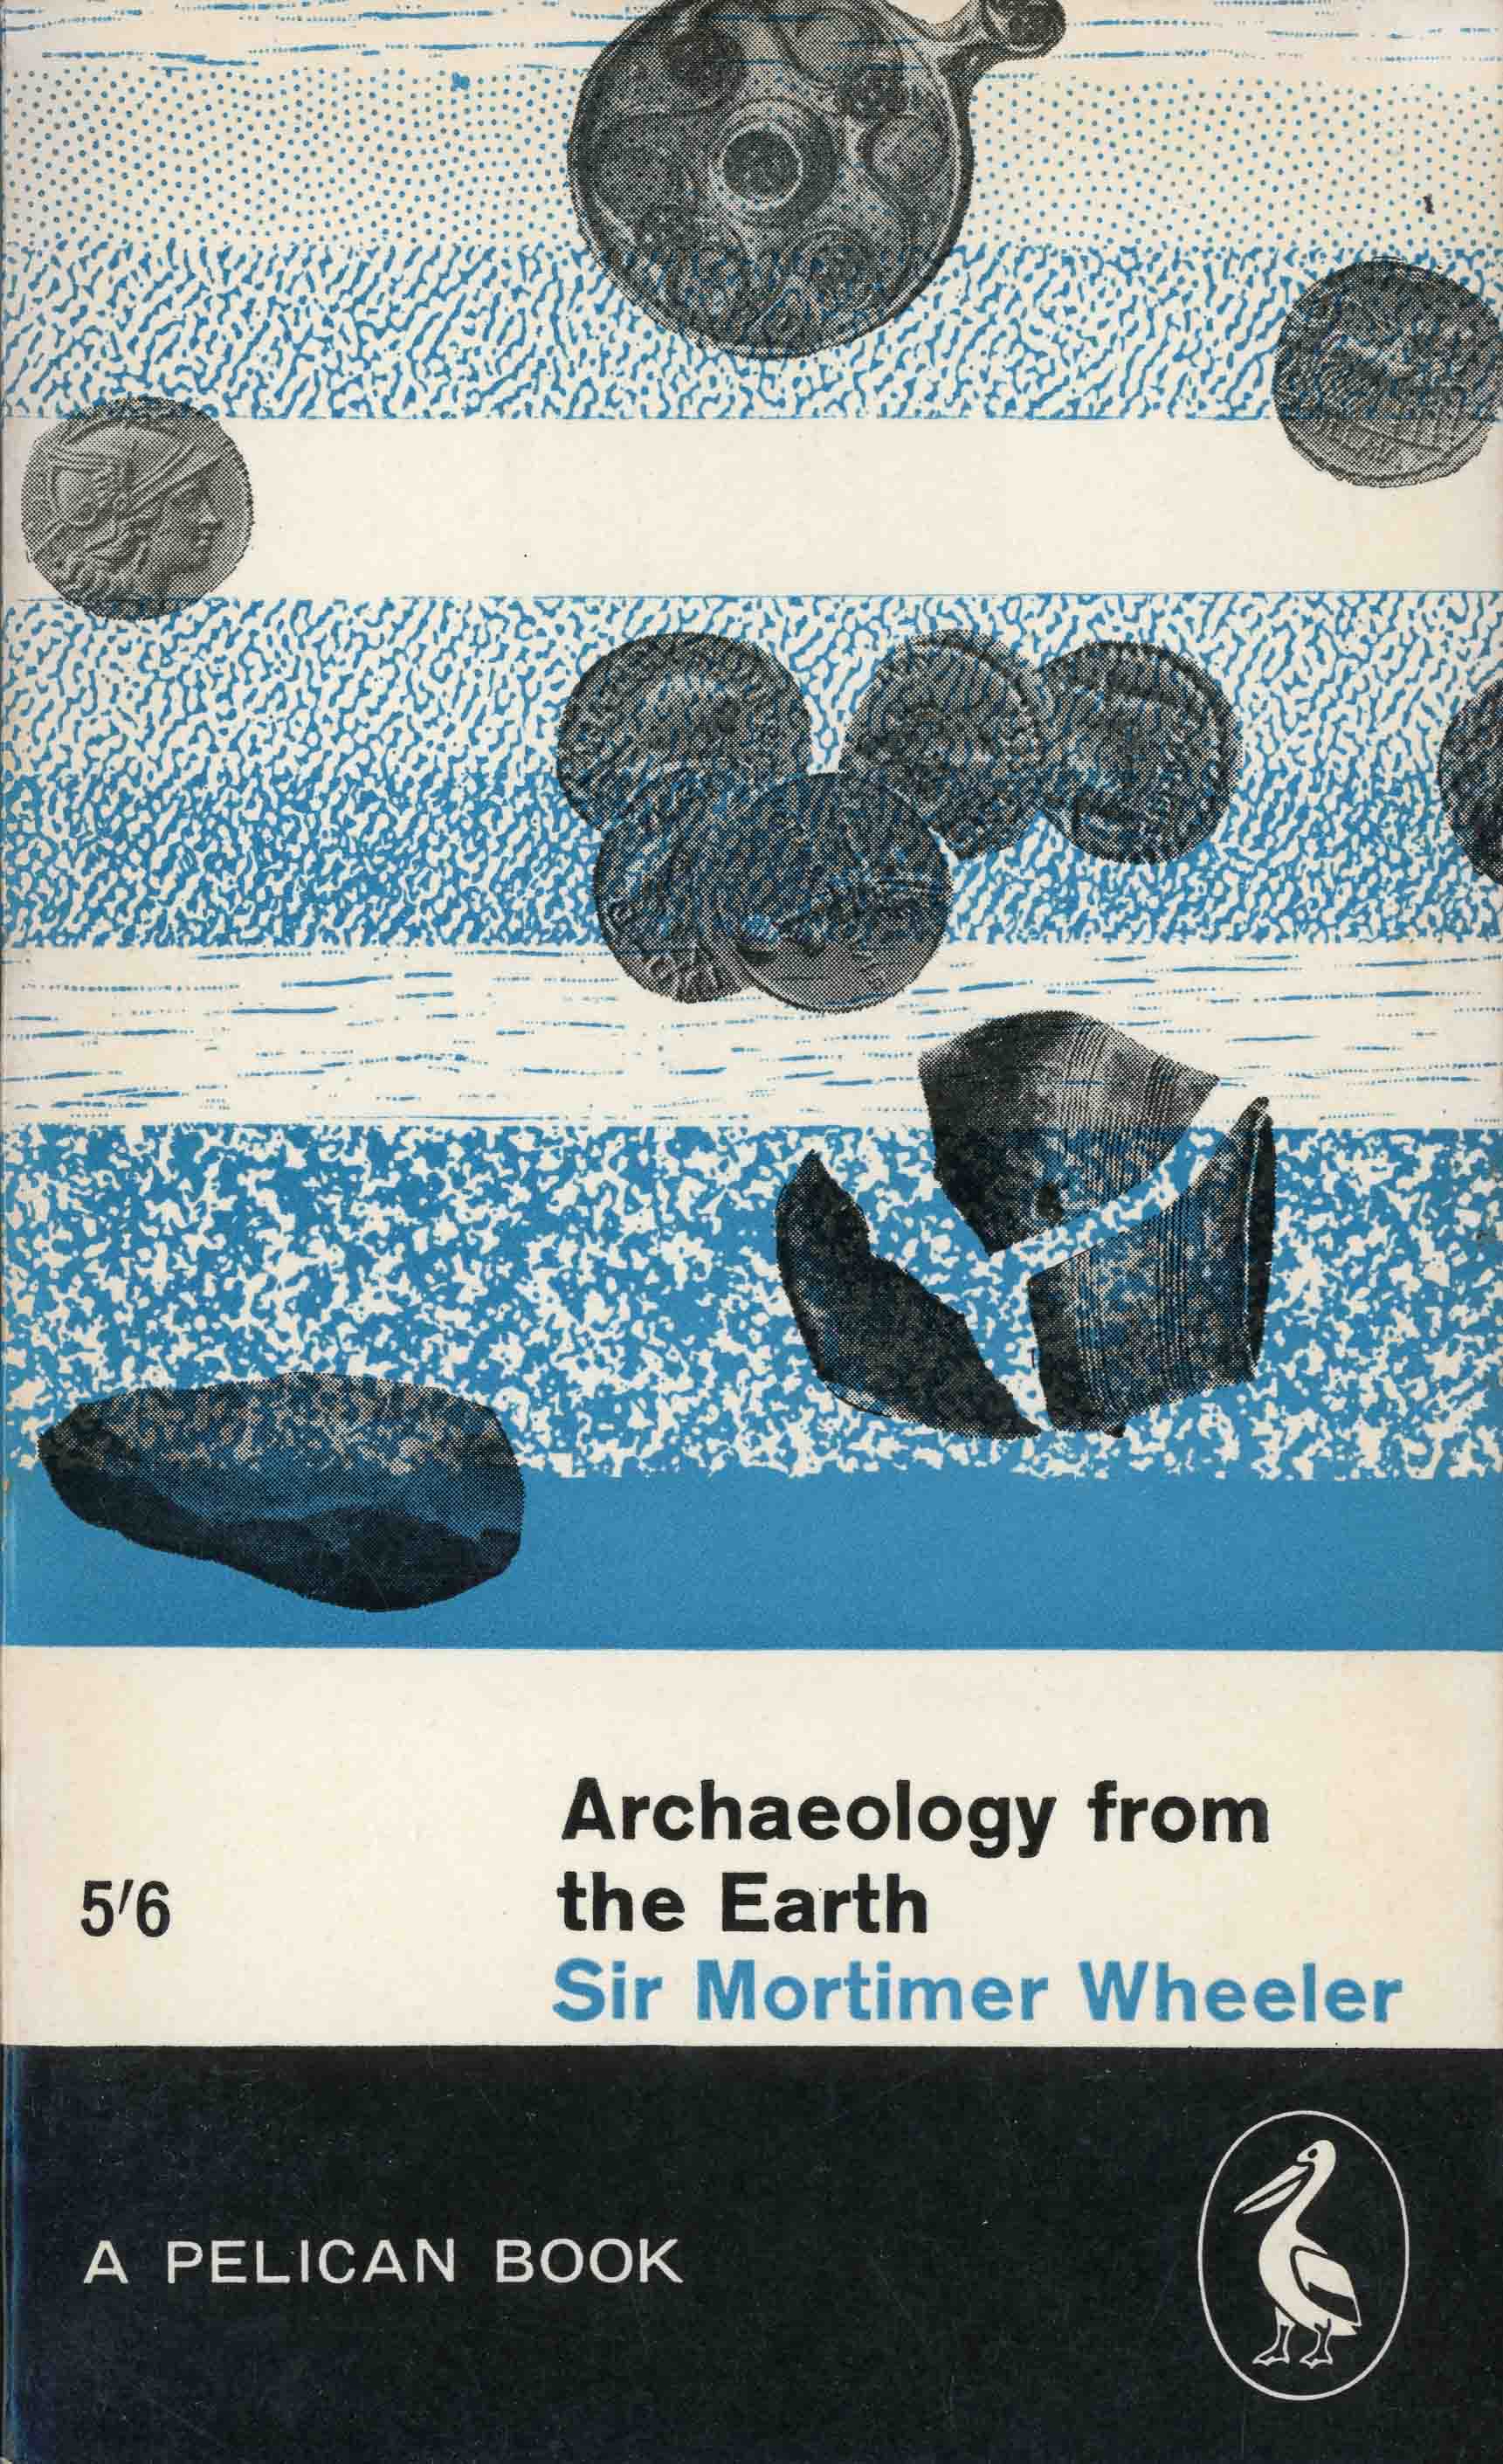 Penguin_Morimer Wheeler_Archaeology_Bruce Robertson design